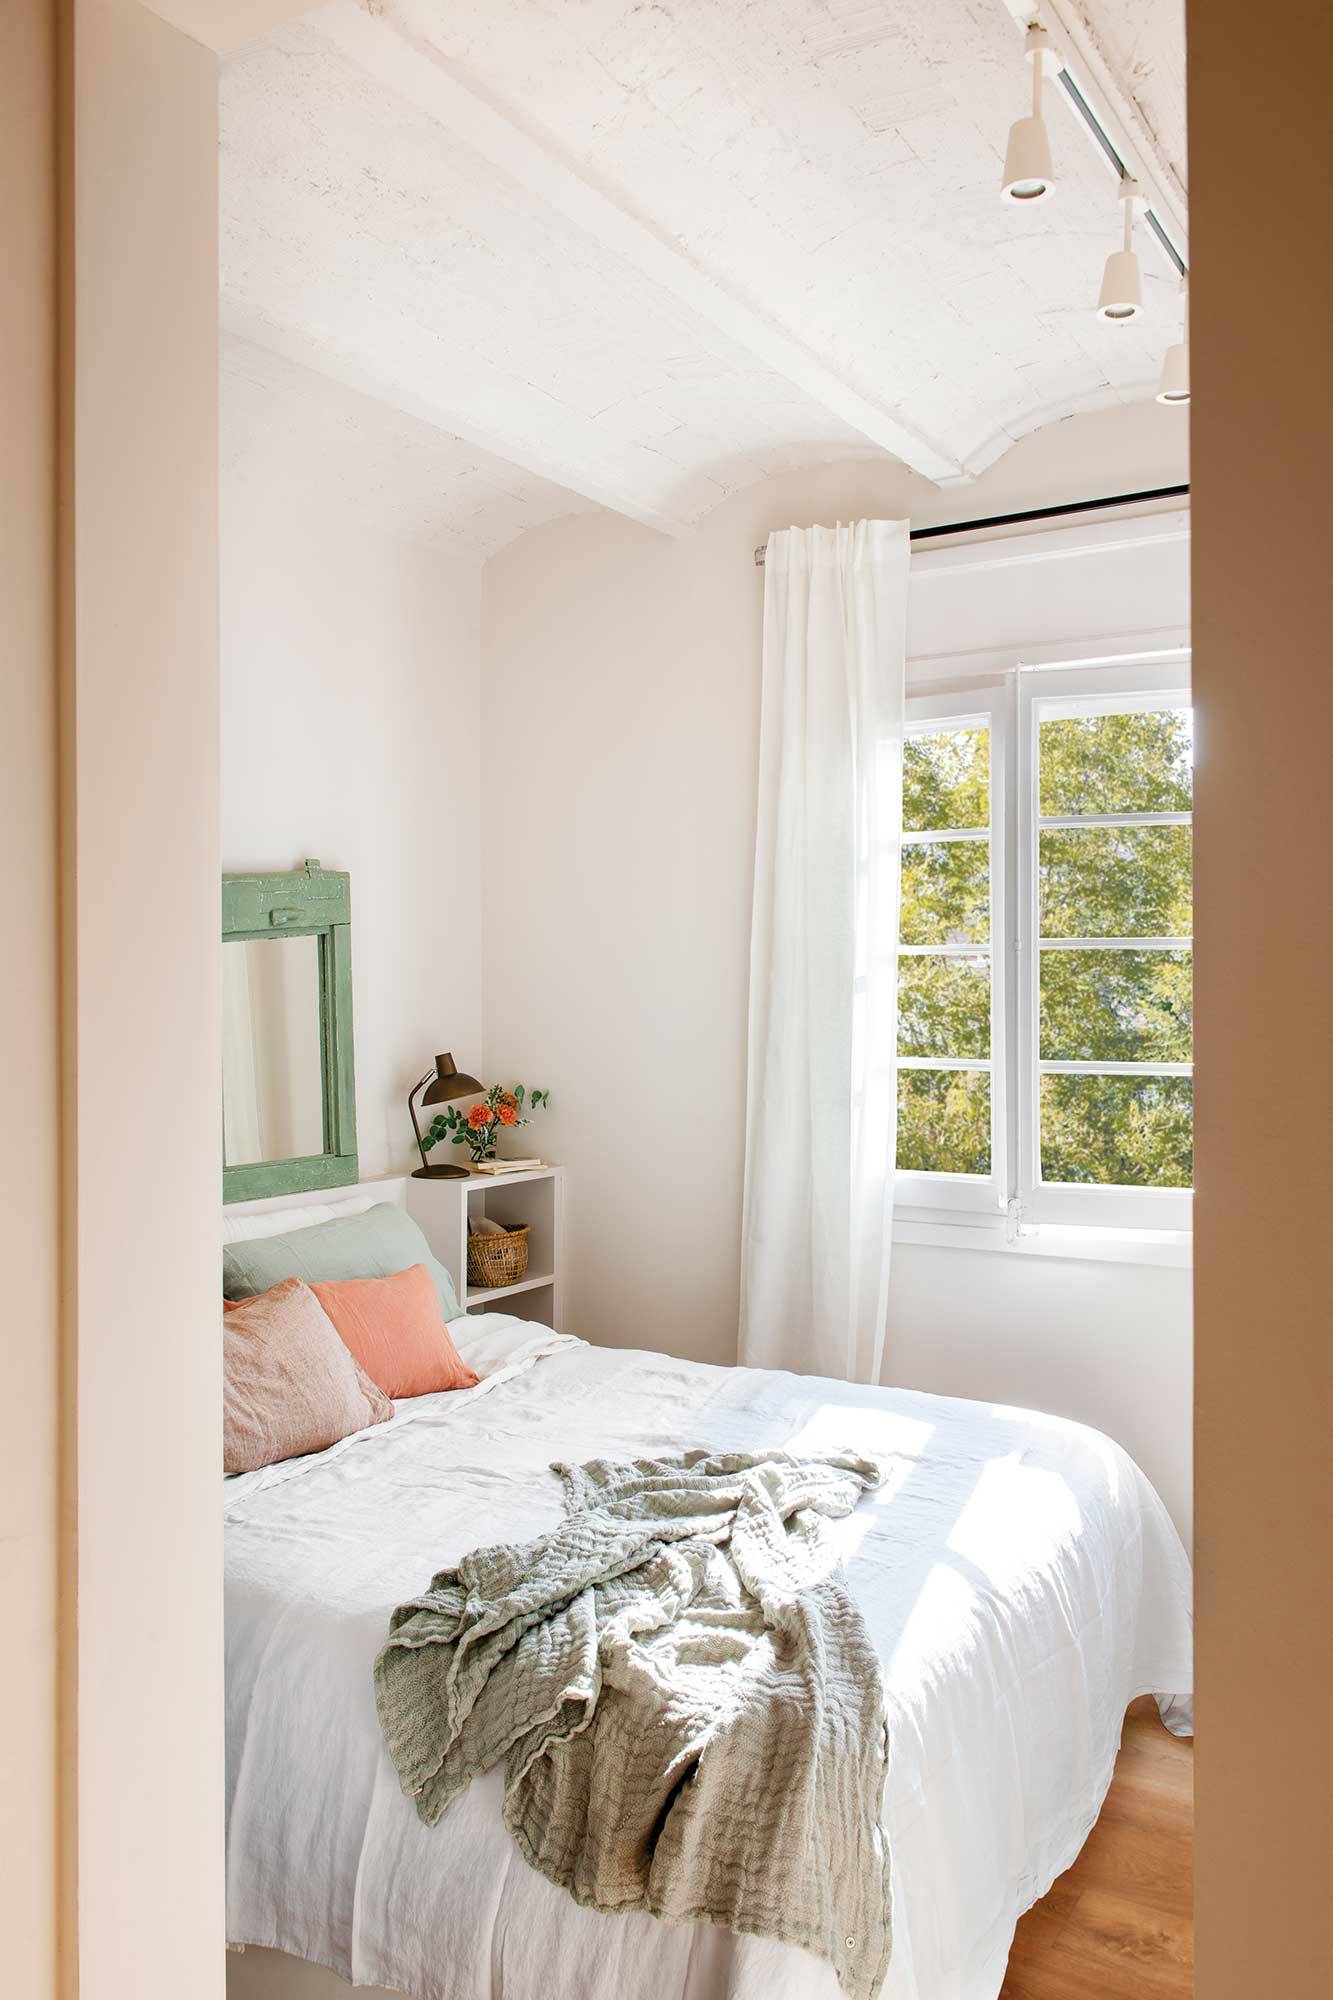 Dormitorio pequeño blanco con techo con volta catalana_00513343